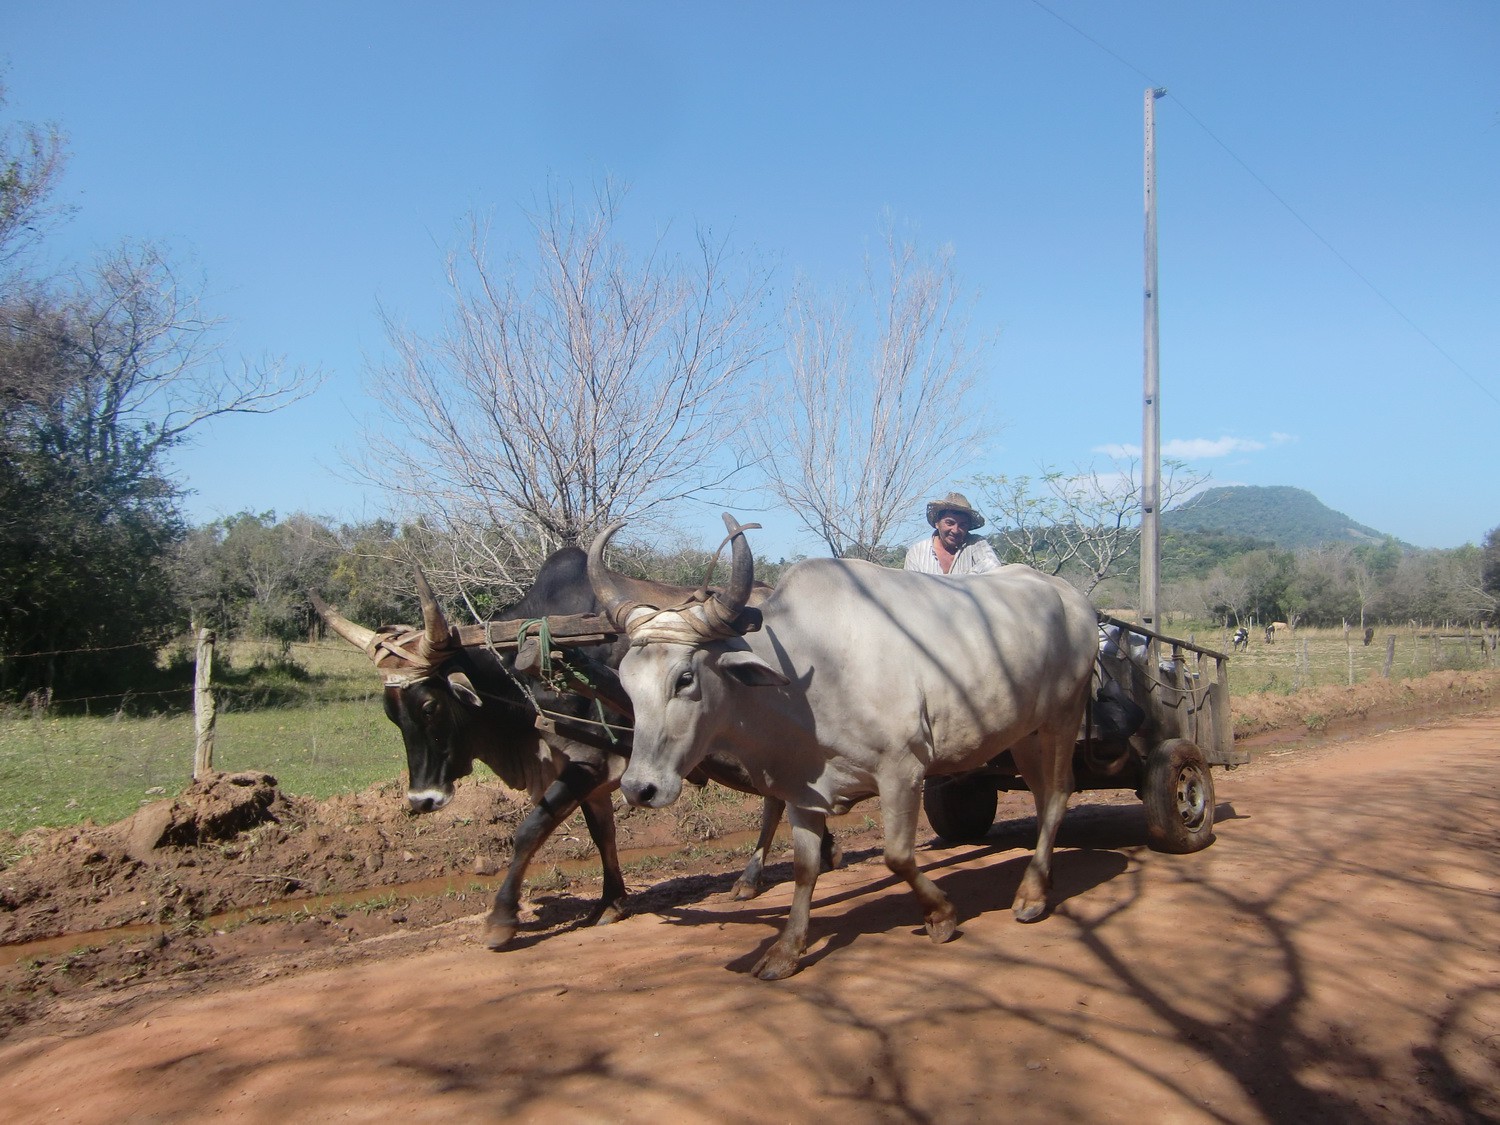 Oxen cart in the Yvytyruzu sanctuary